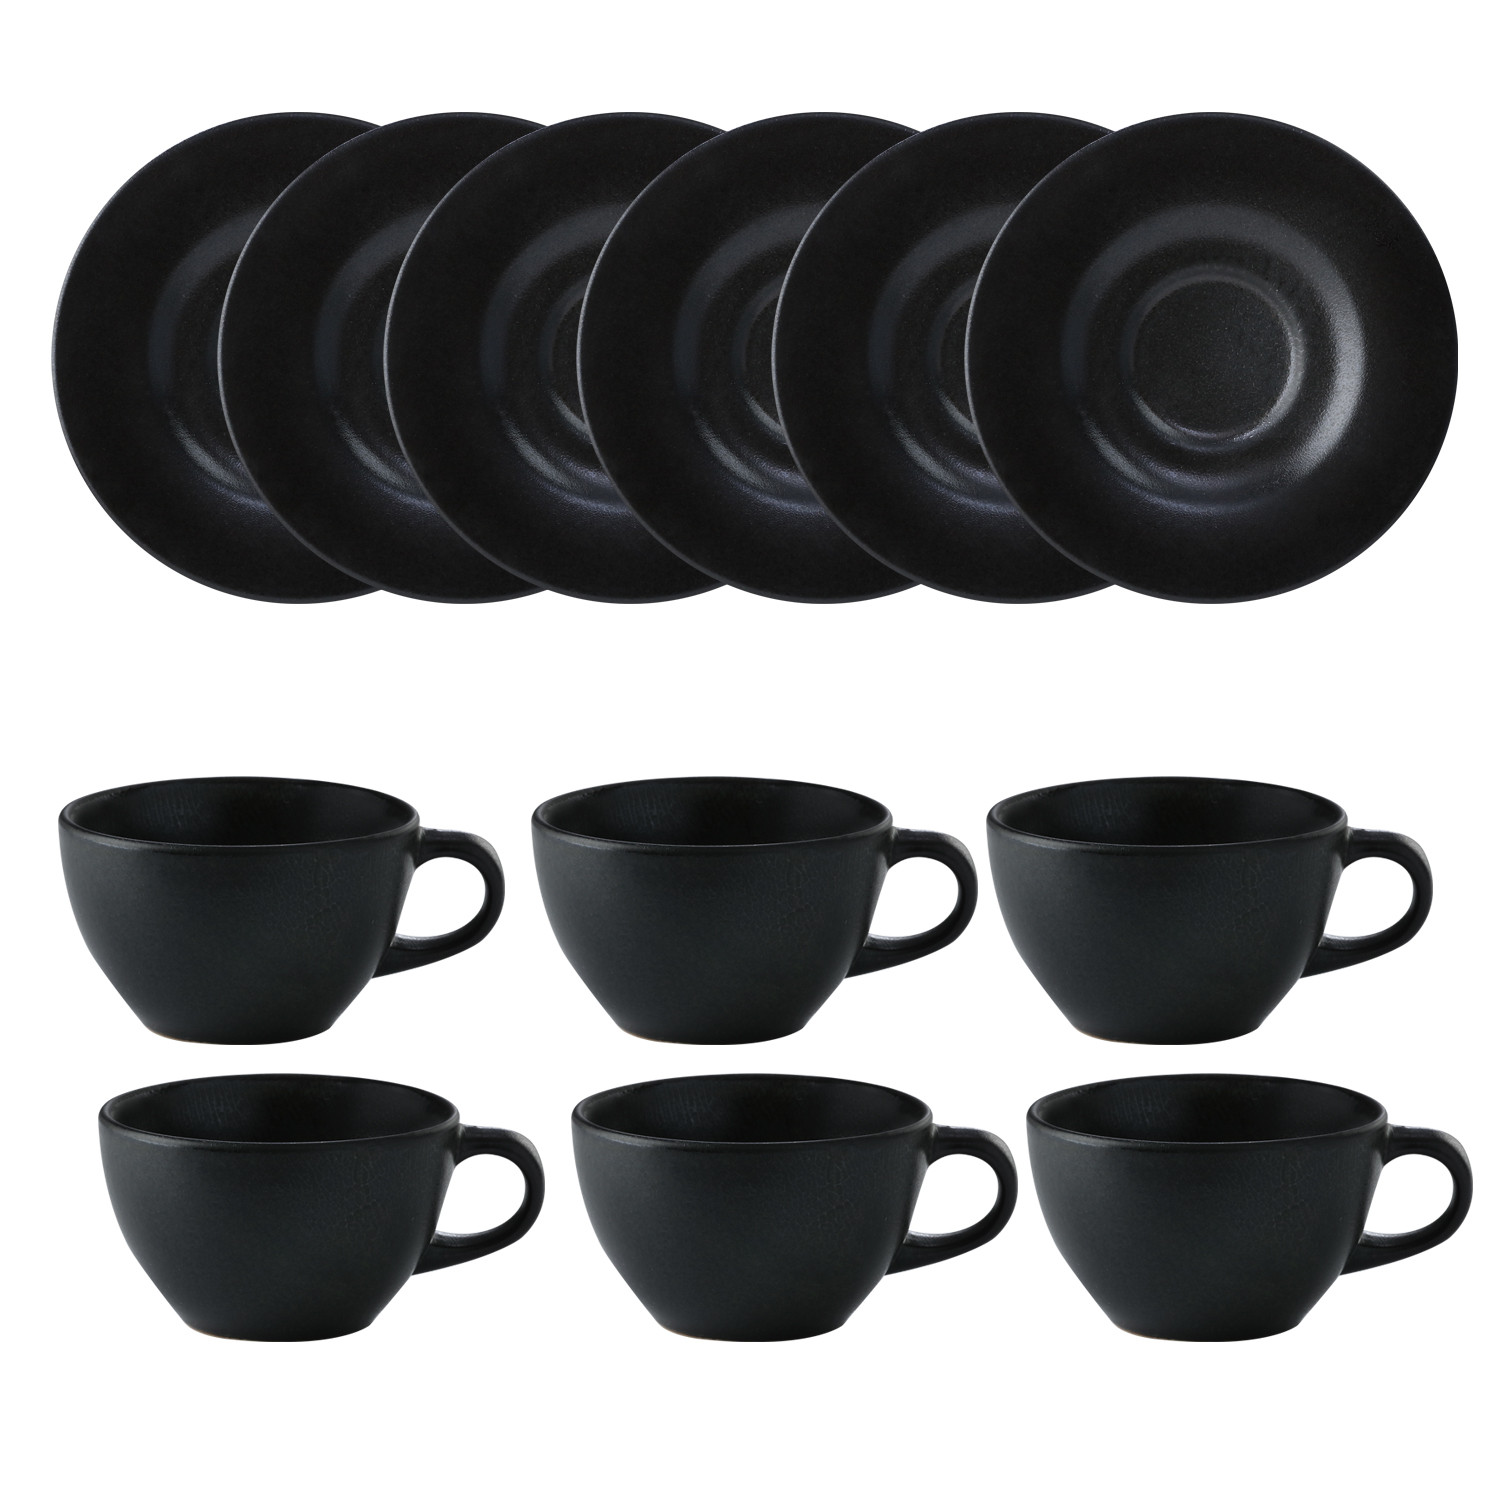 Imagen Set 6 pocillo café con platos Negro reactivo 1